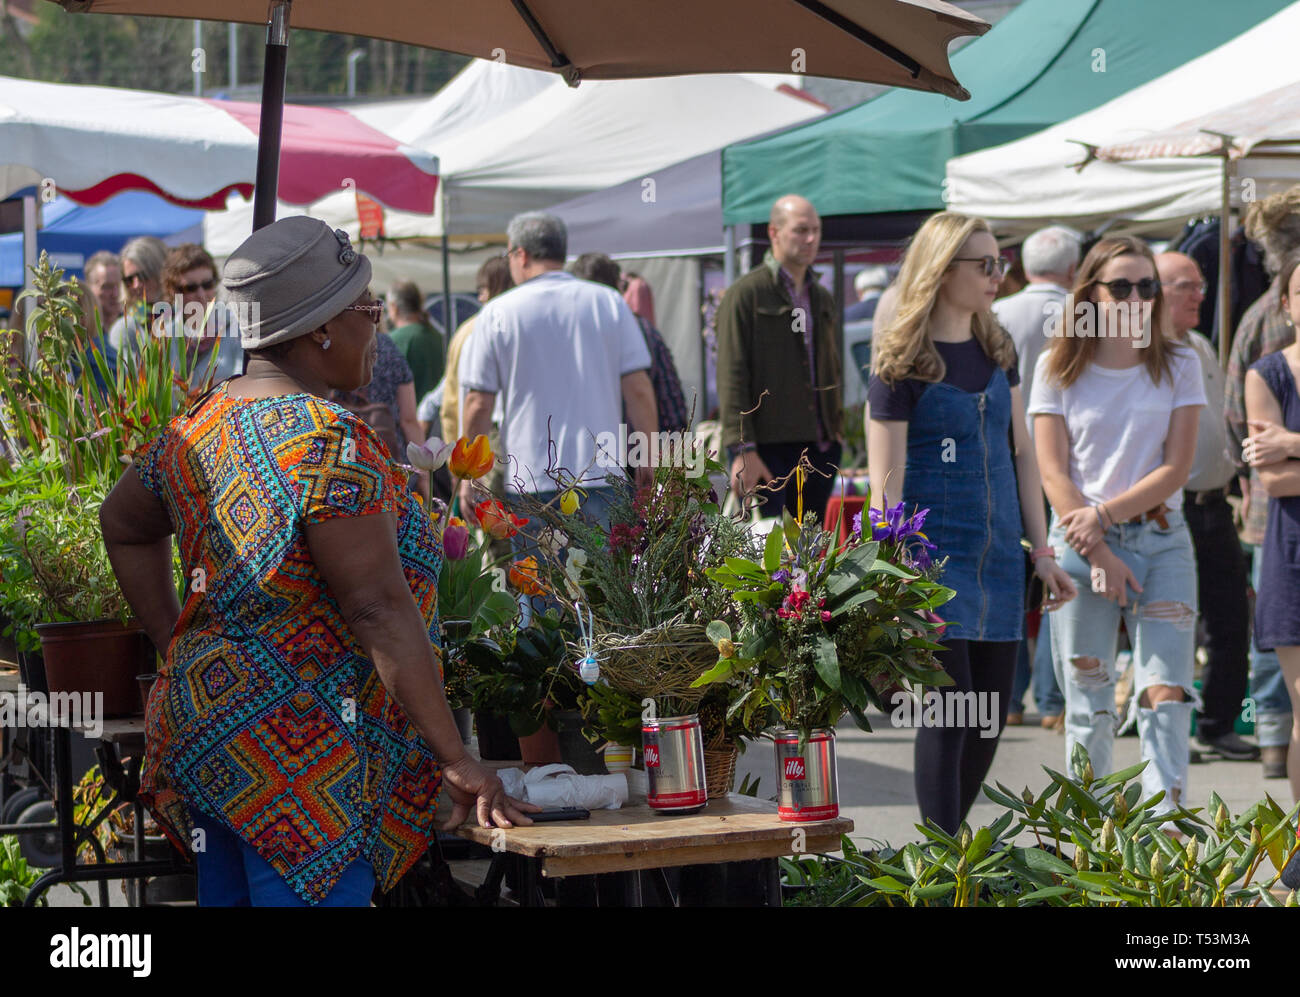 Mujer vestido de colores brillantes en la venta de flores en un país con economía de mercado. Foto de stock